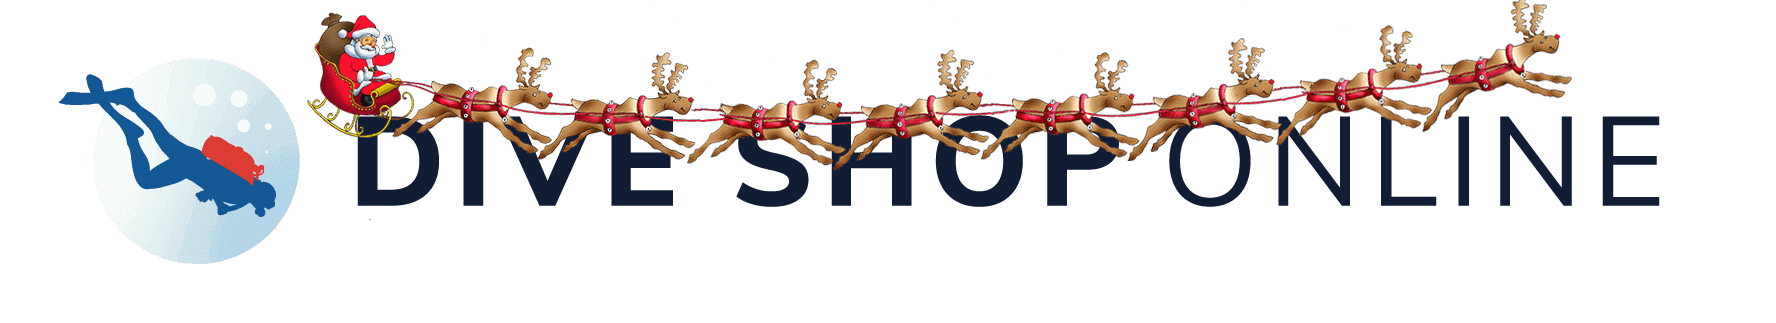 Dive Shop Online Christmas Logo